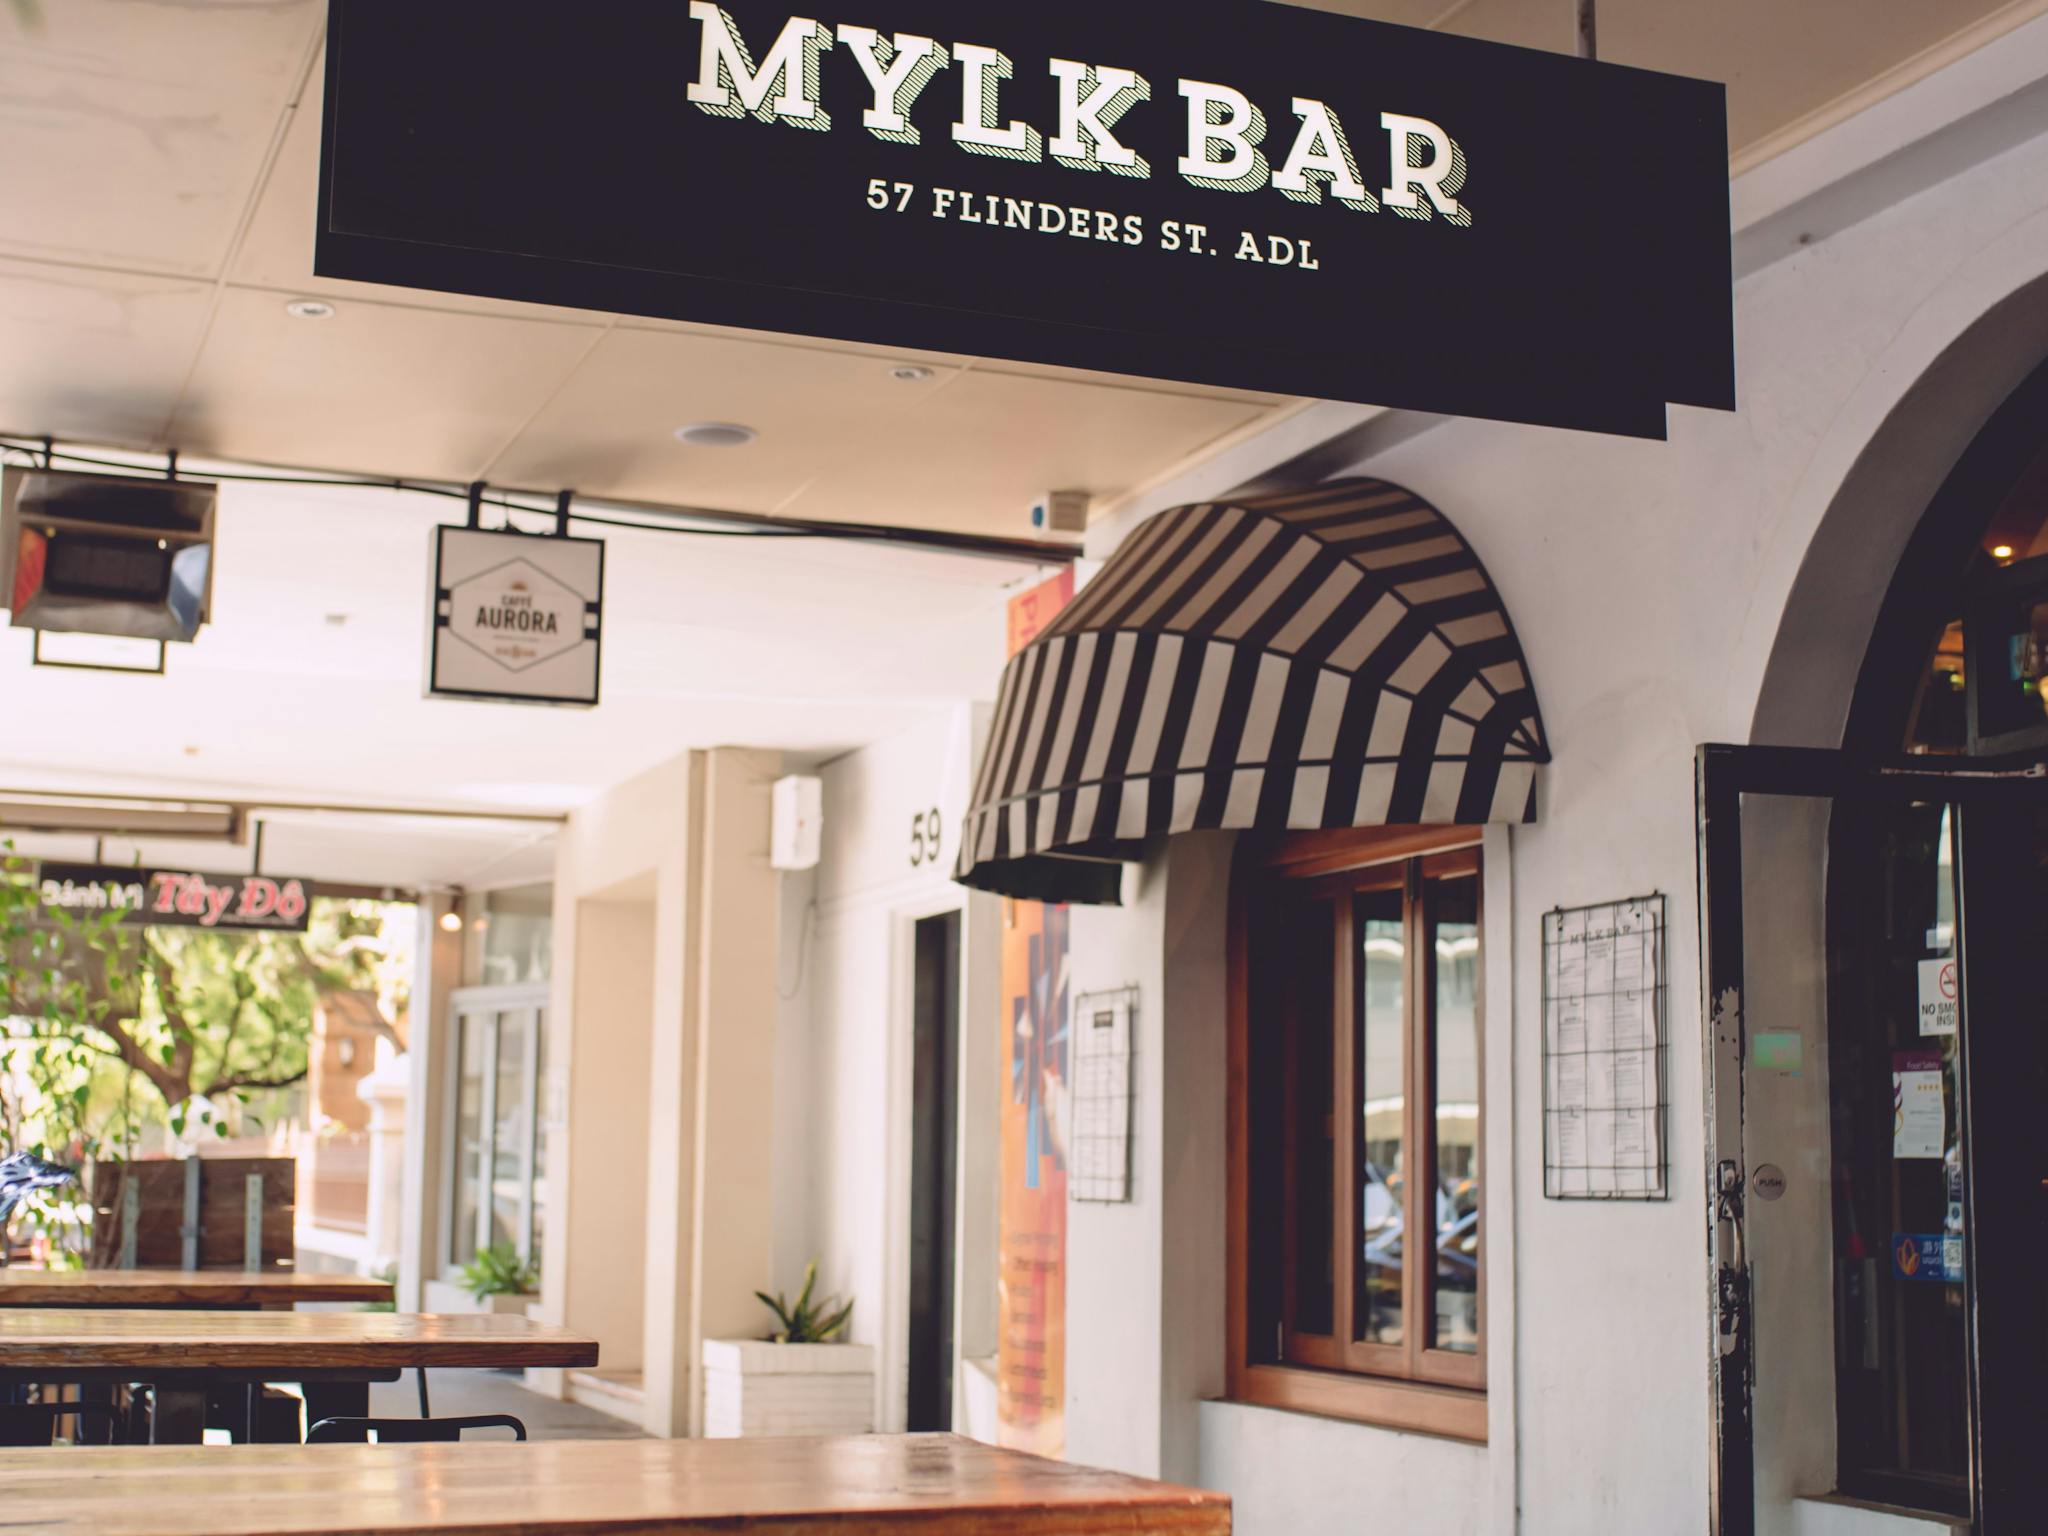 Mylk Bar Slider Image 1